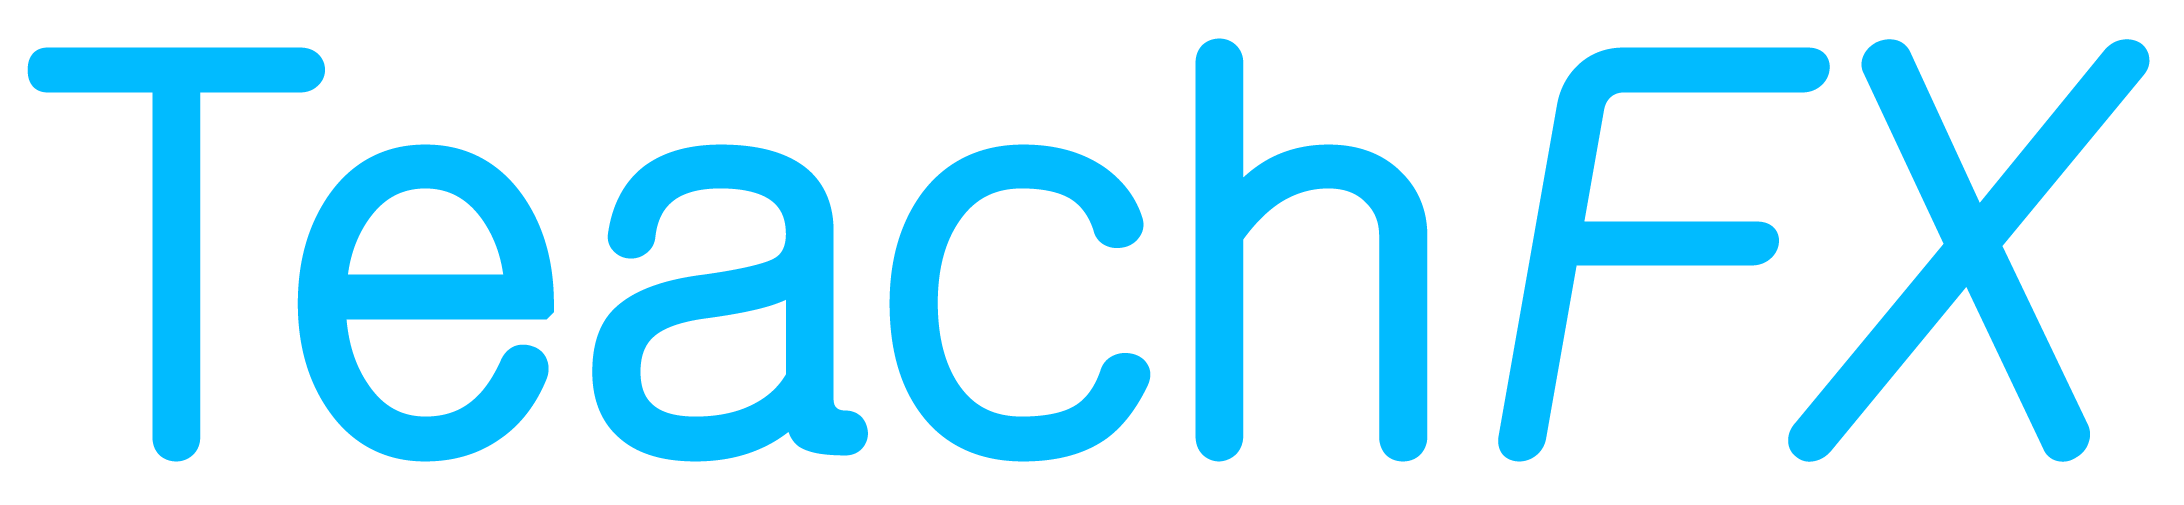 TeachFX Logo